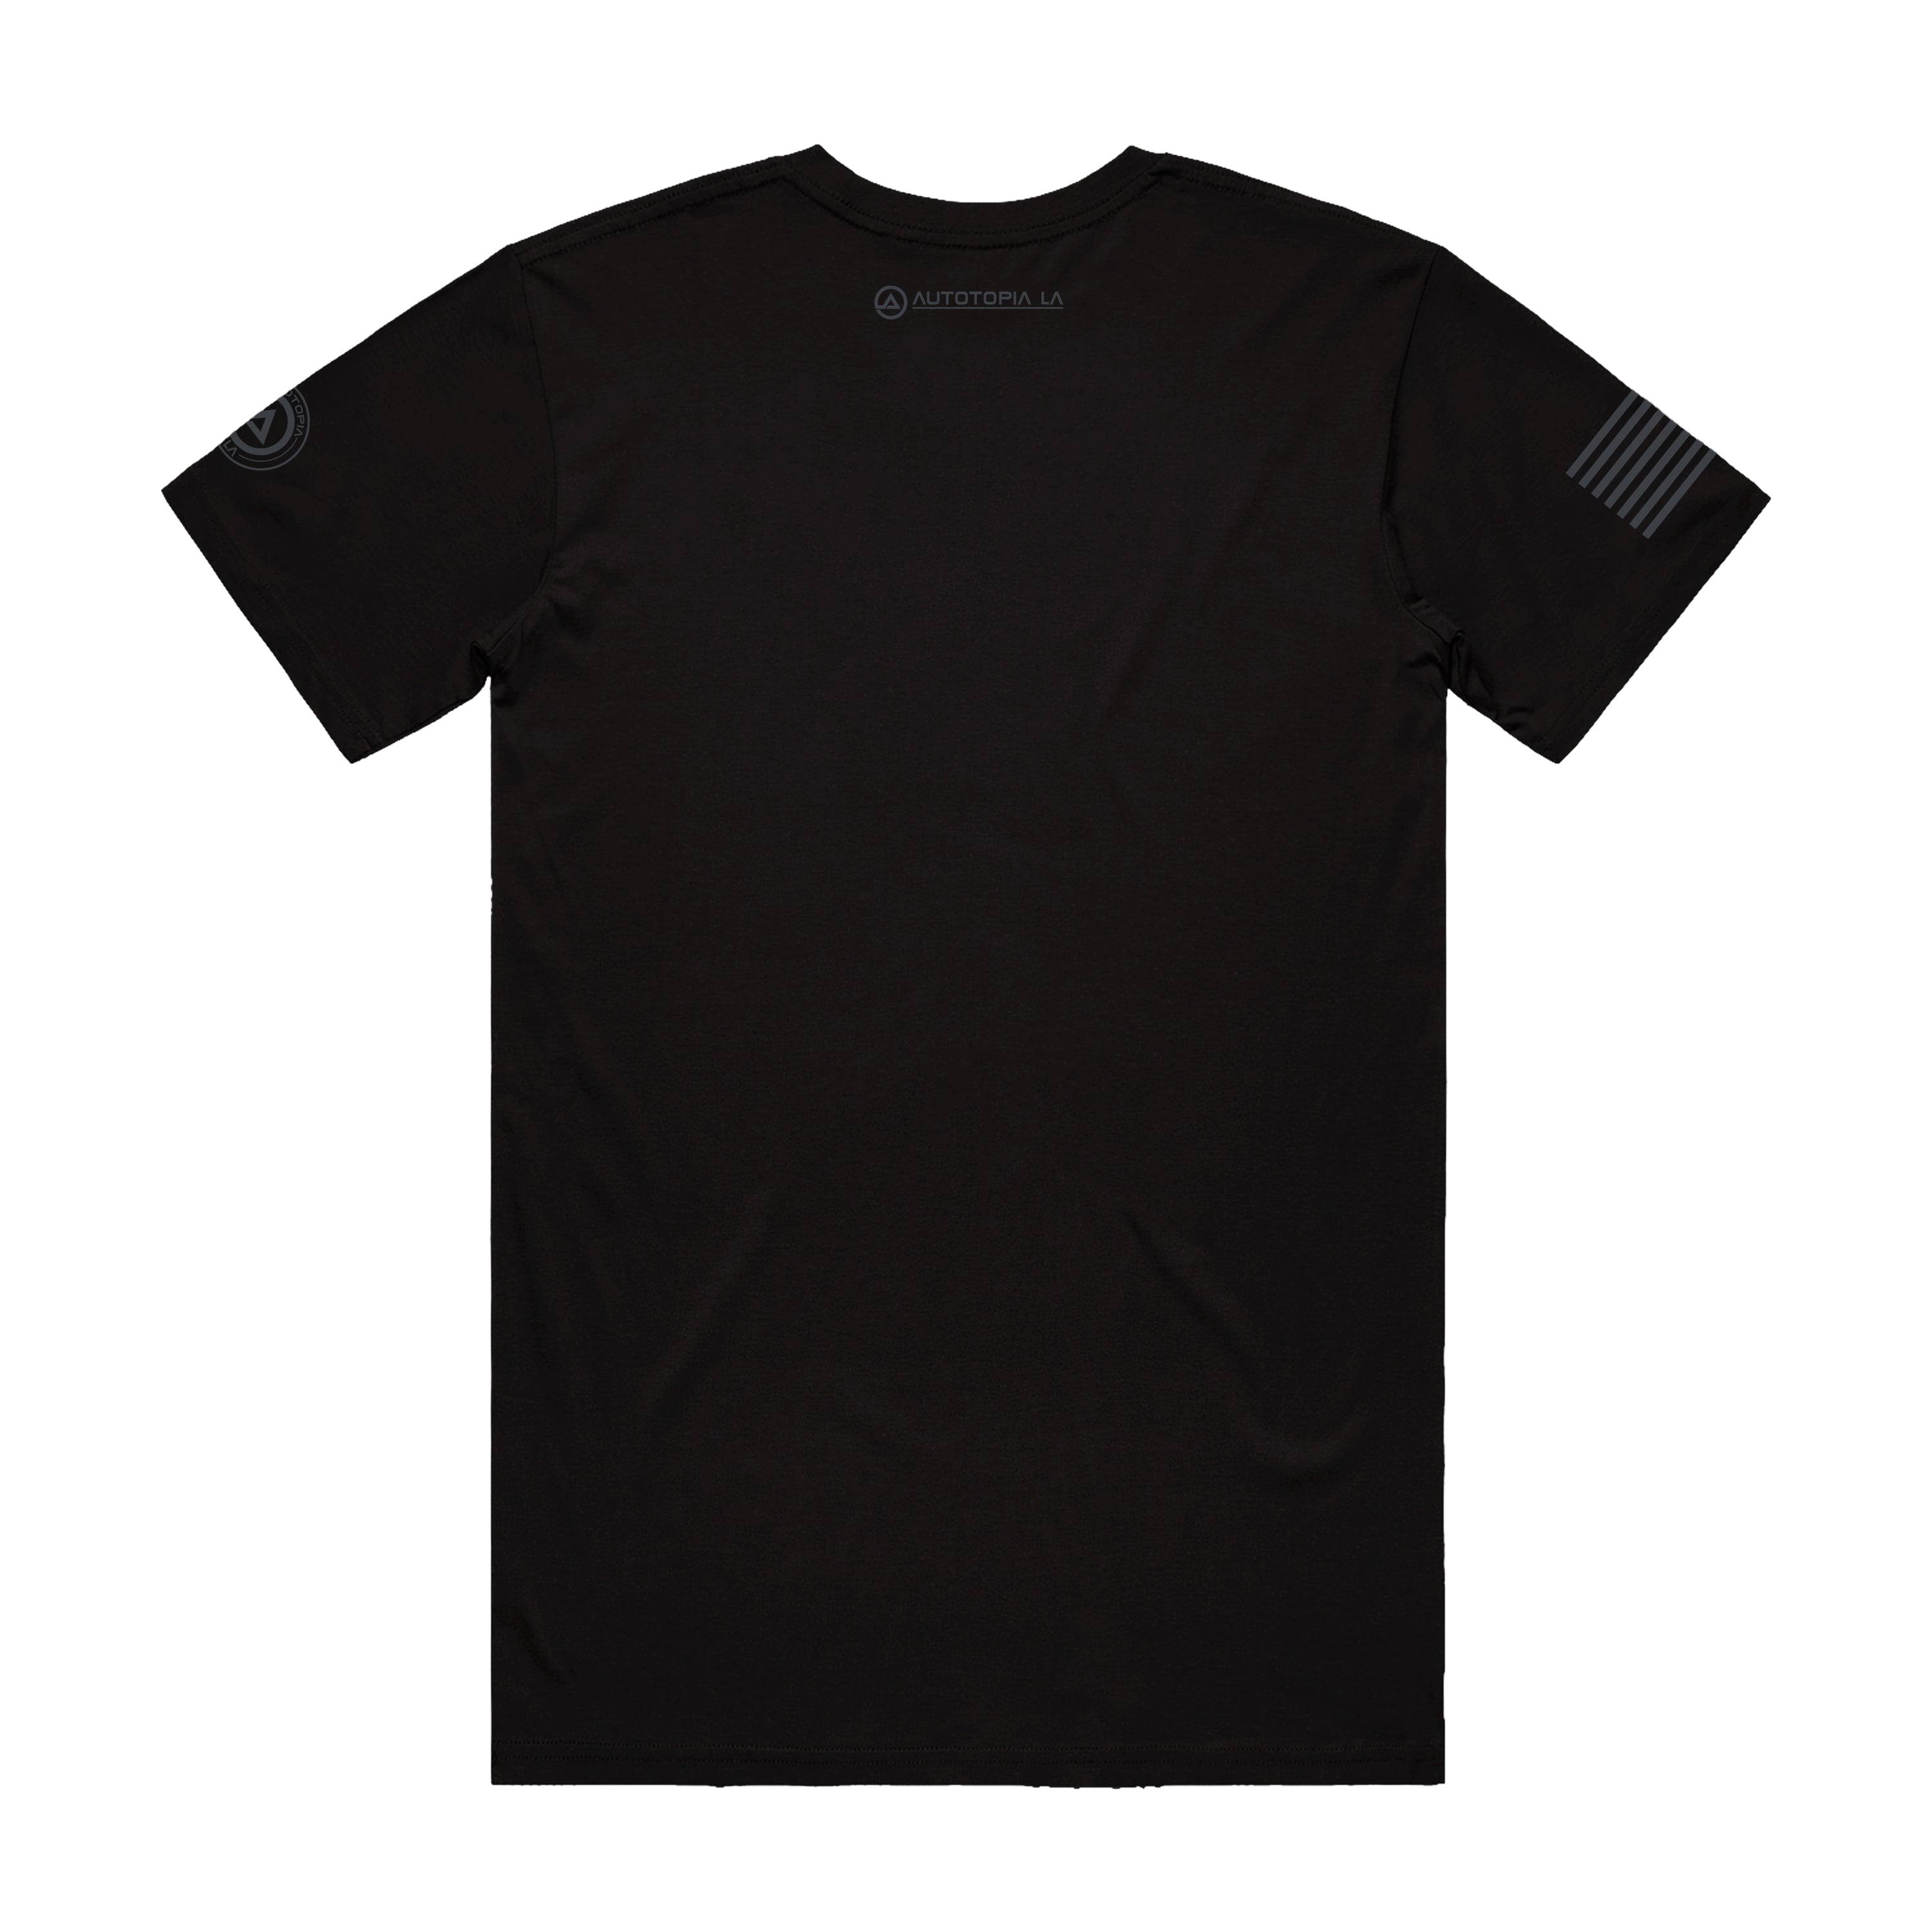 Tshirt - Black Performance Driven